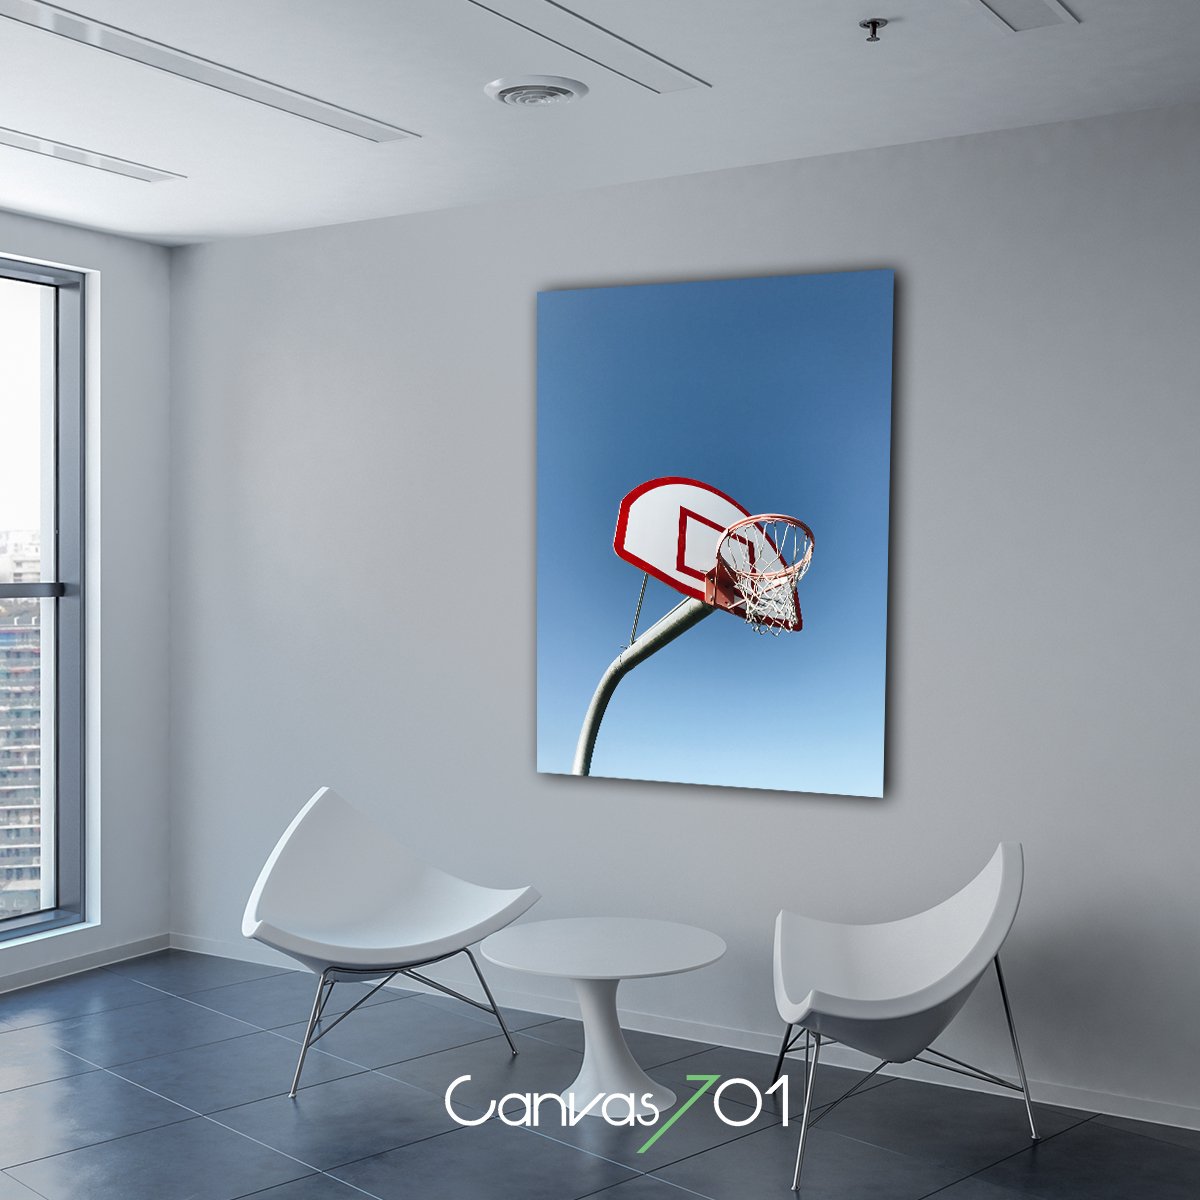 Canvas701 | Basketbol Kanvas Tablo